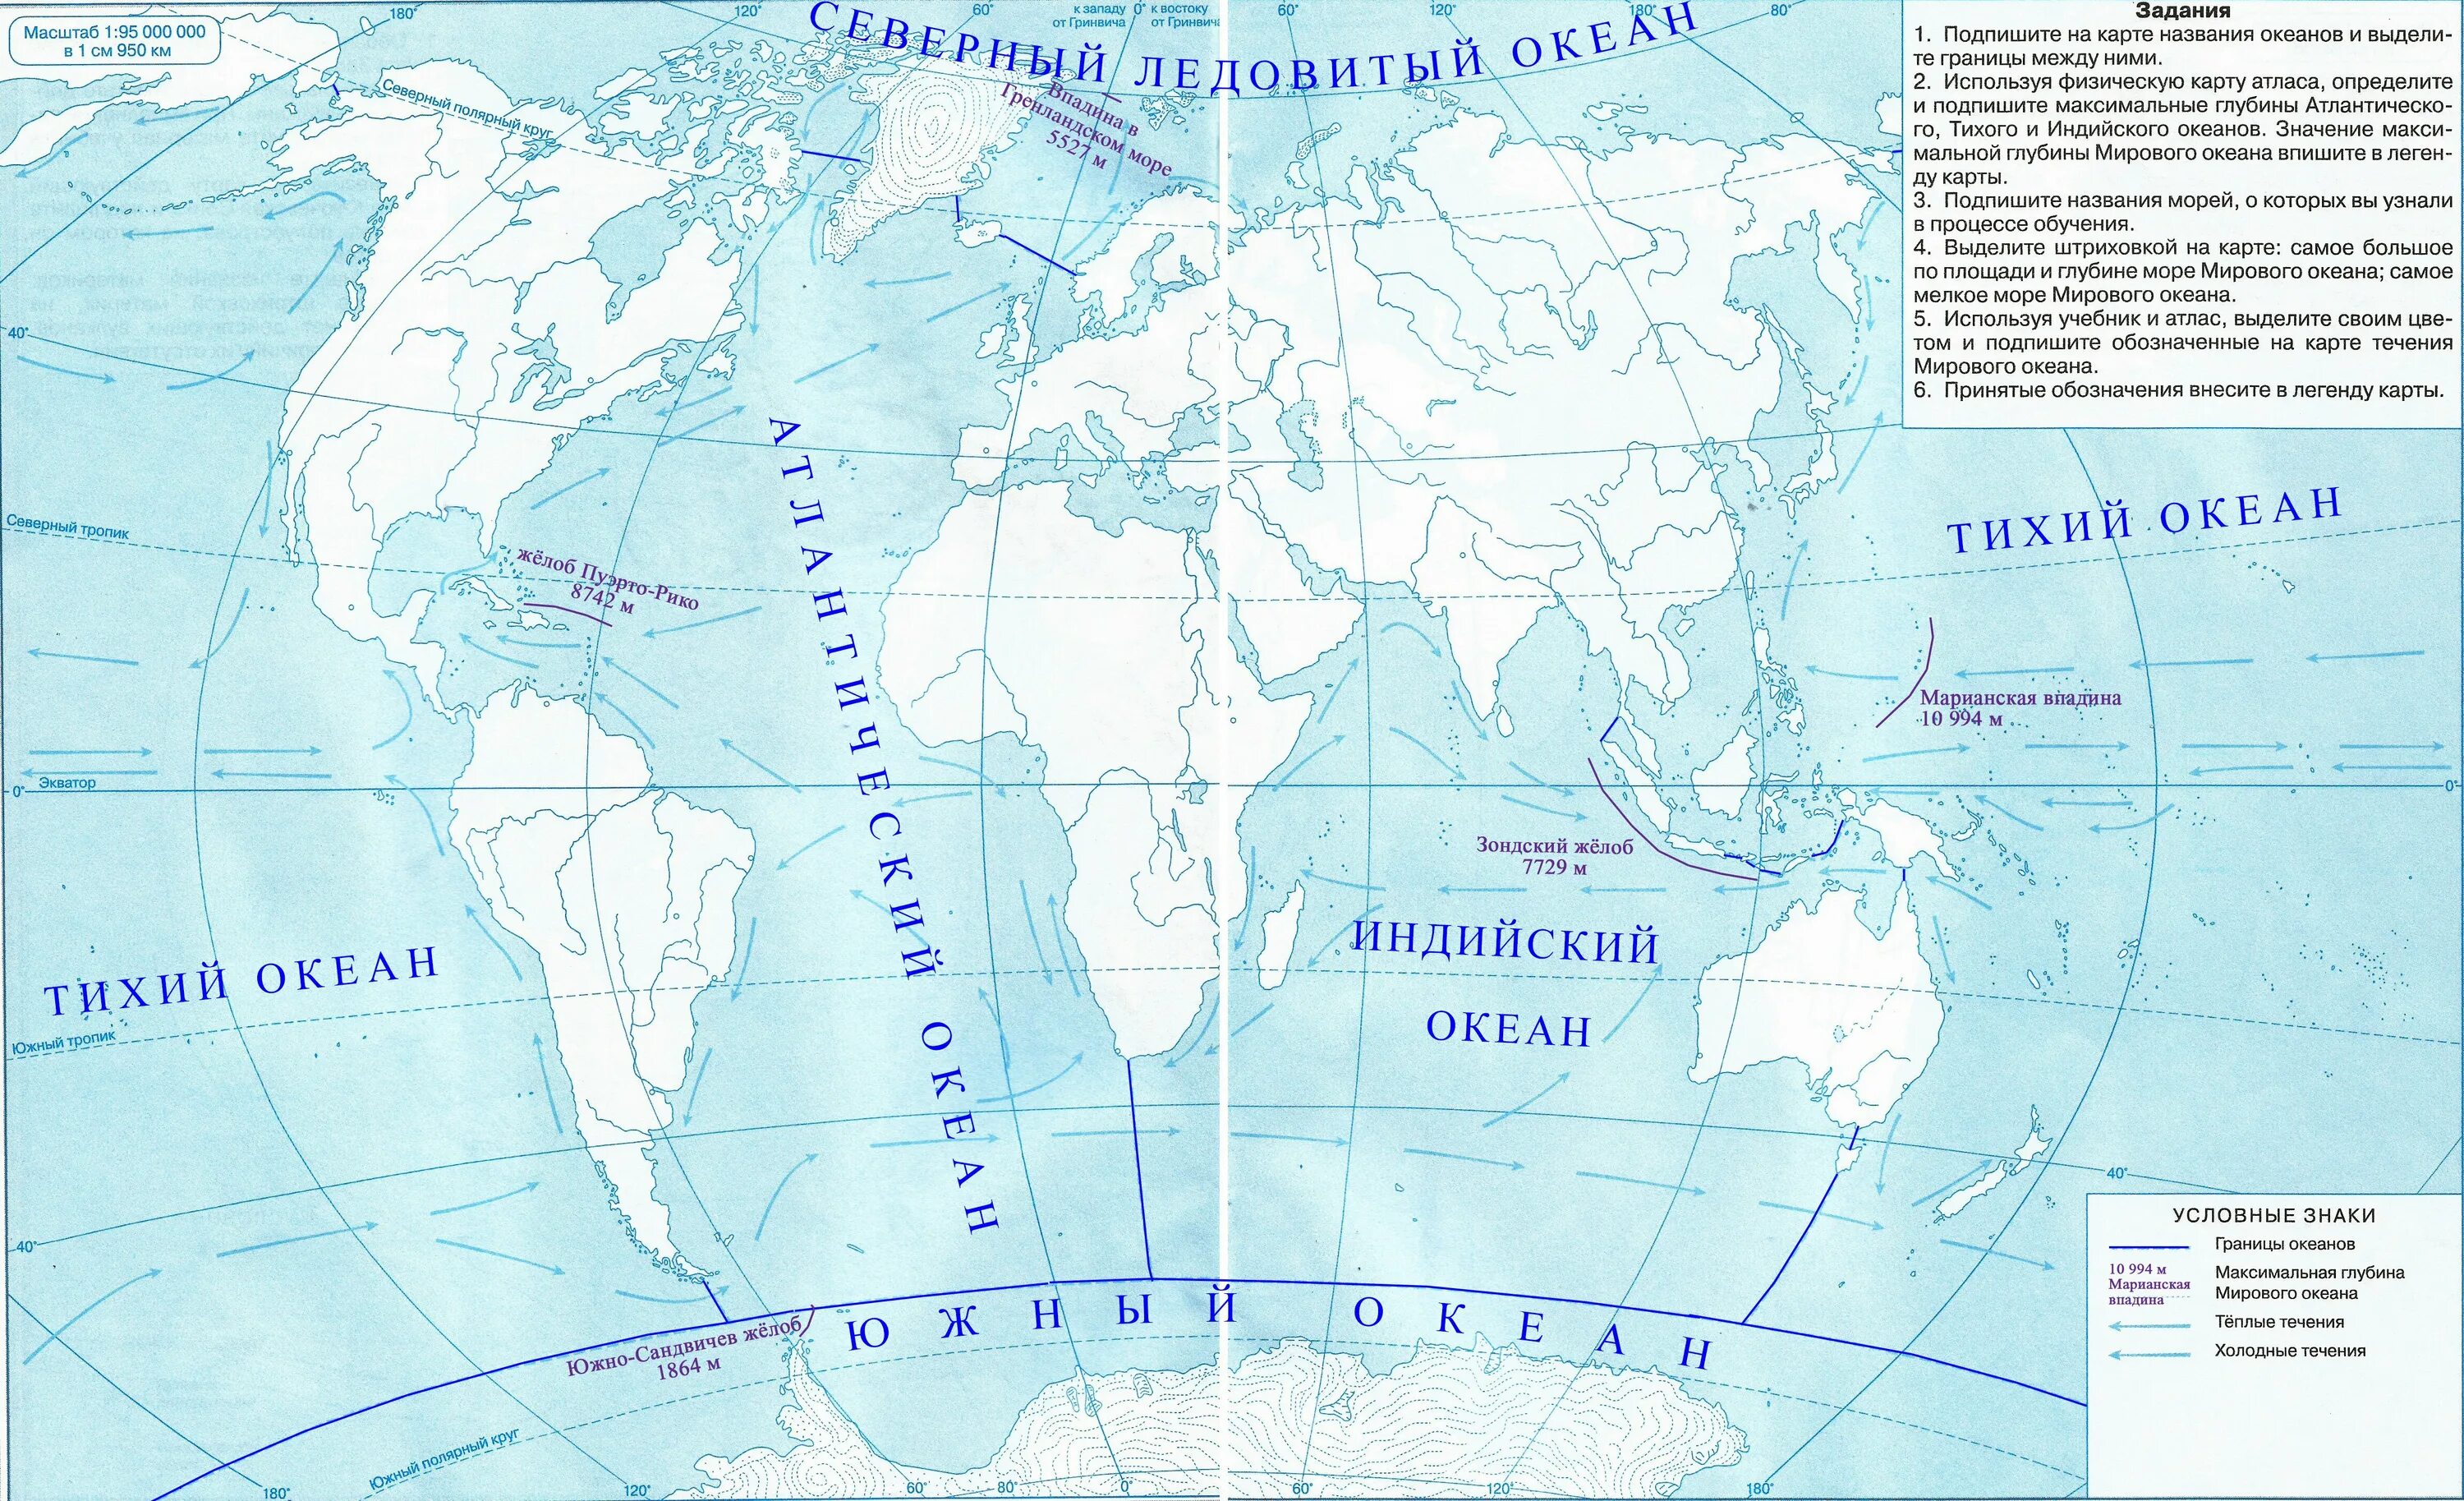 Контурные карты пятый класс страница 10 11. Контурная карта Тихого океана. Контурная карта по географии 5 класс карта мирового океана. Карта мирового океана 6 класс контурная карта атлас по географии. Максимальная глубина мирового океана на контурной карте.